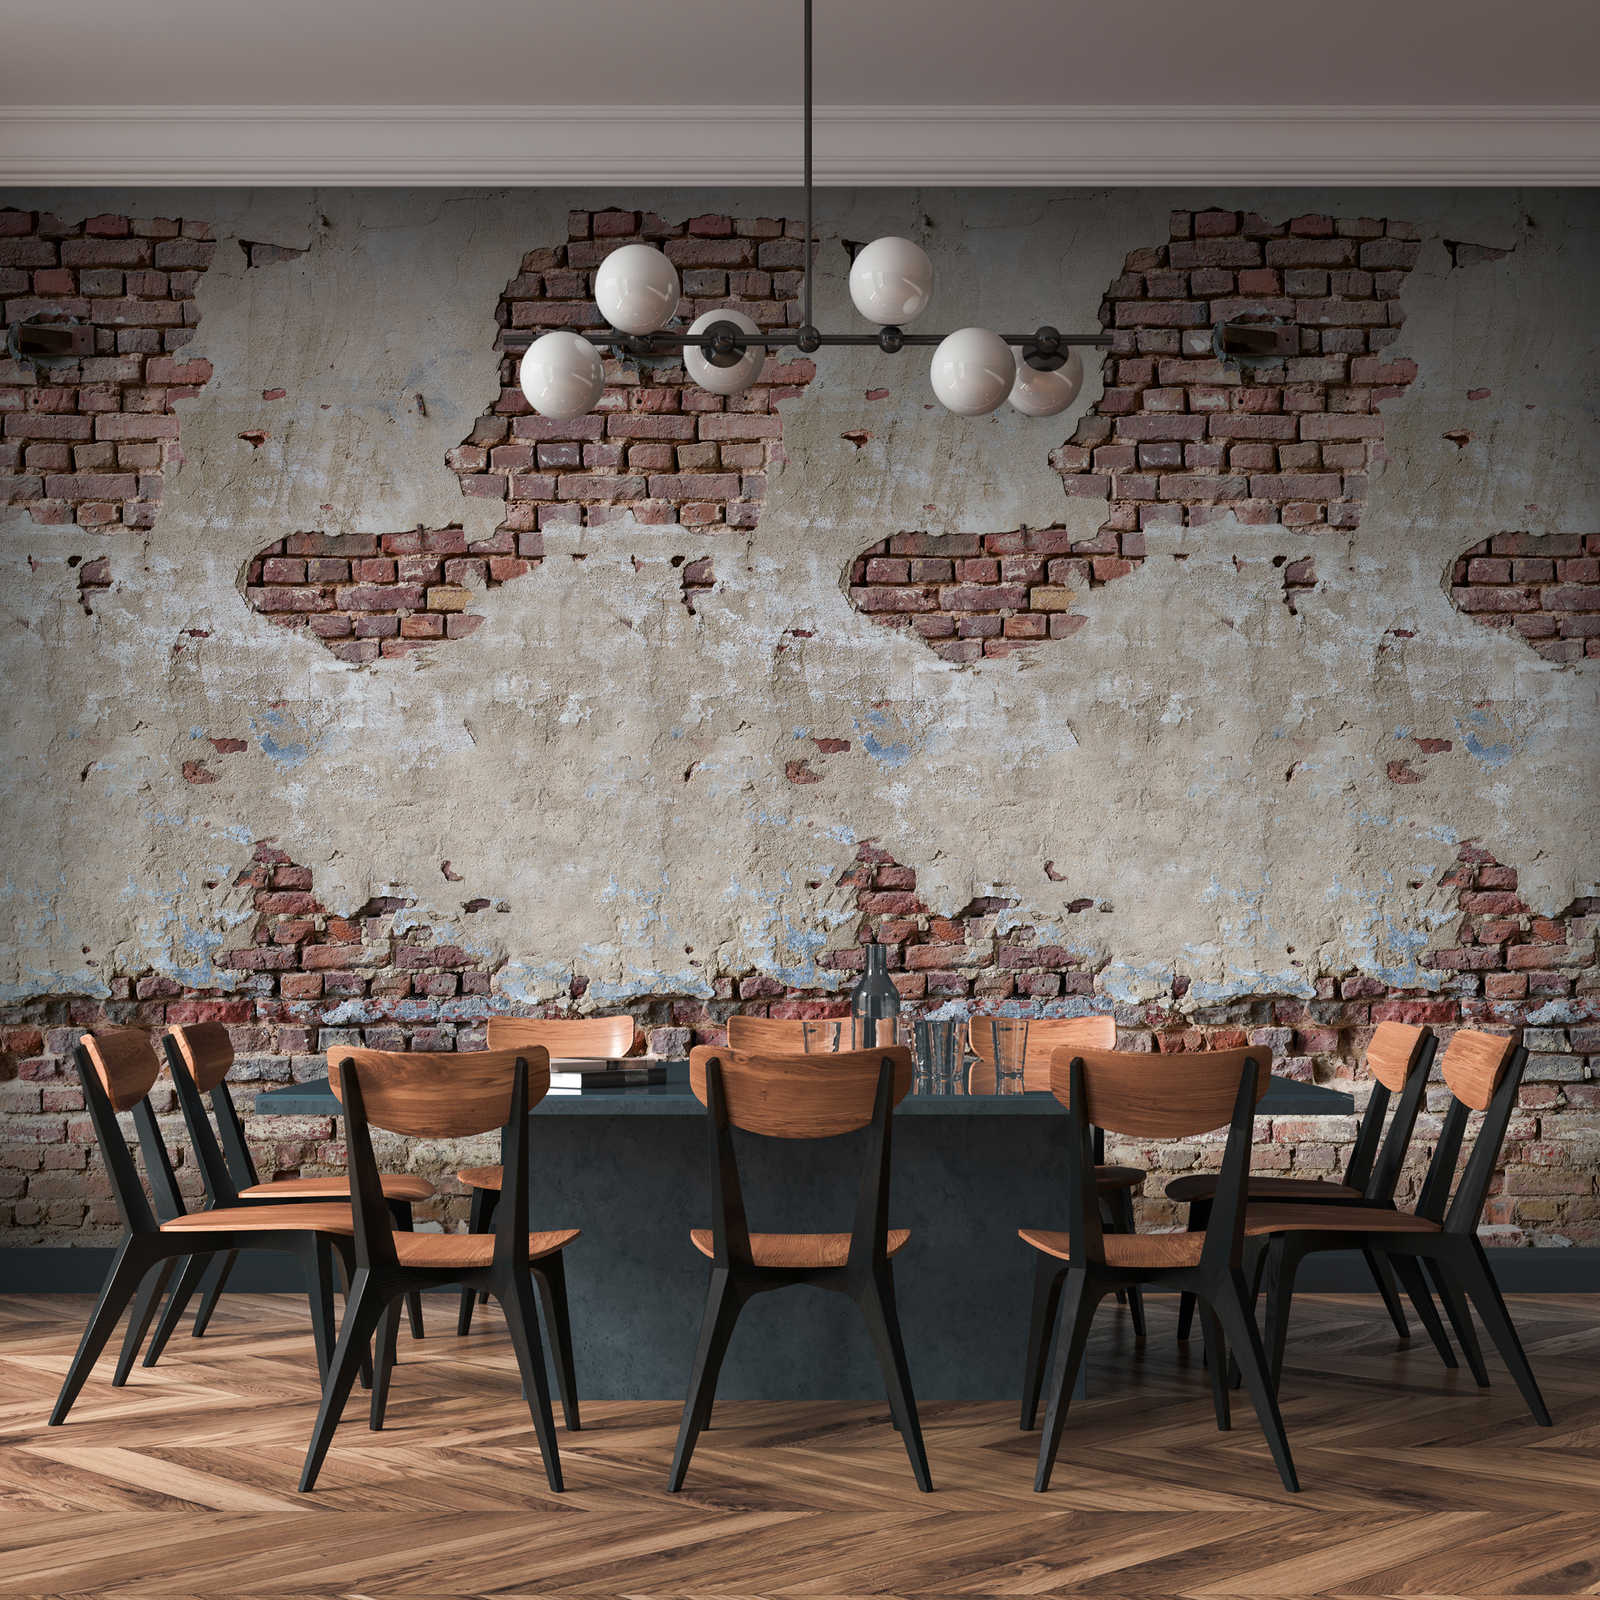         Brick Wall Wallpaper in Used Look - Beige, Brown, Cream
    